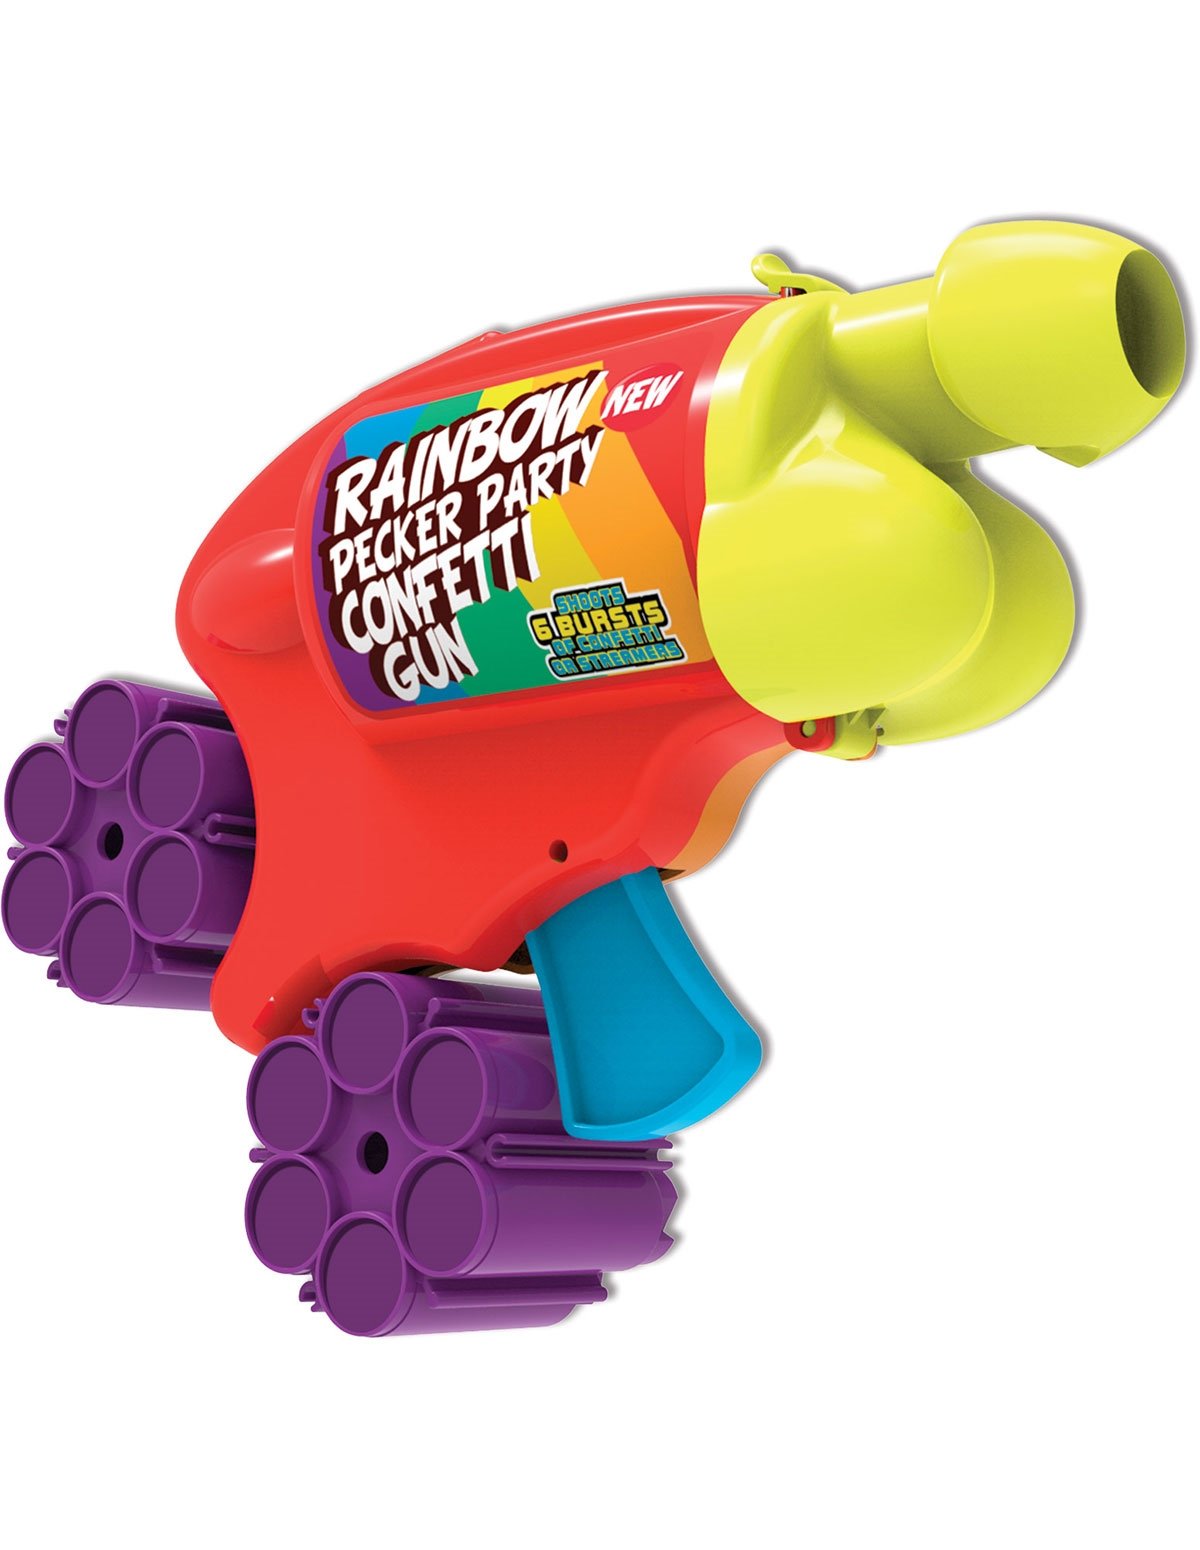 alternate image for Rainbow Pecker Party Confetti Gun